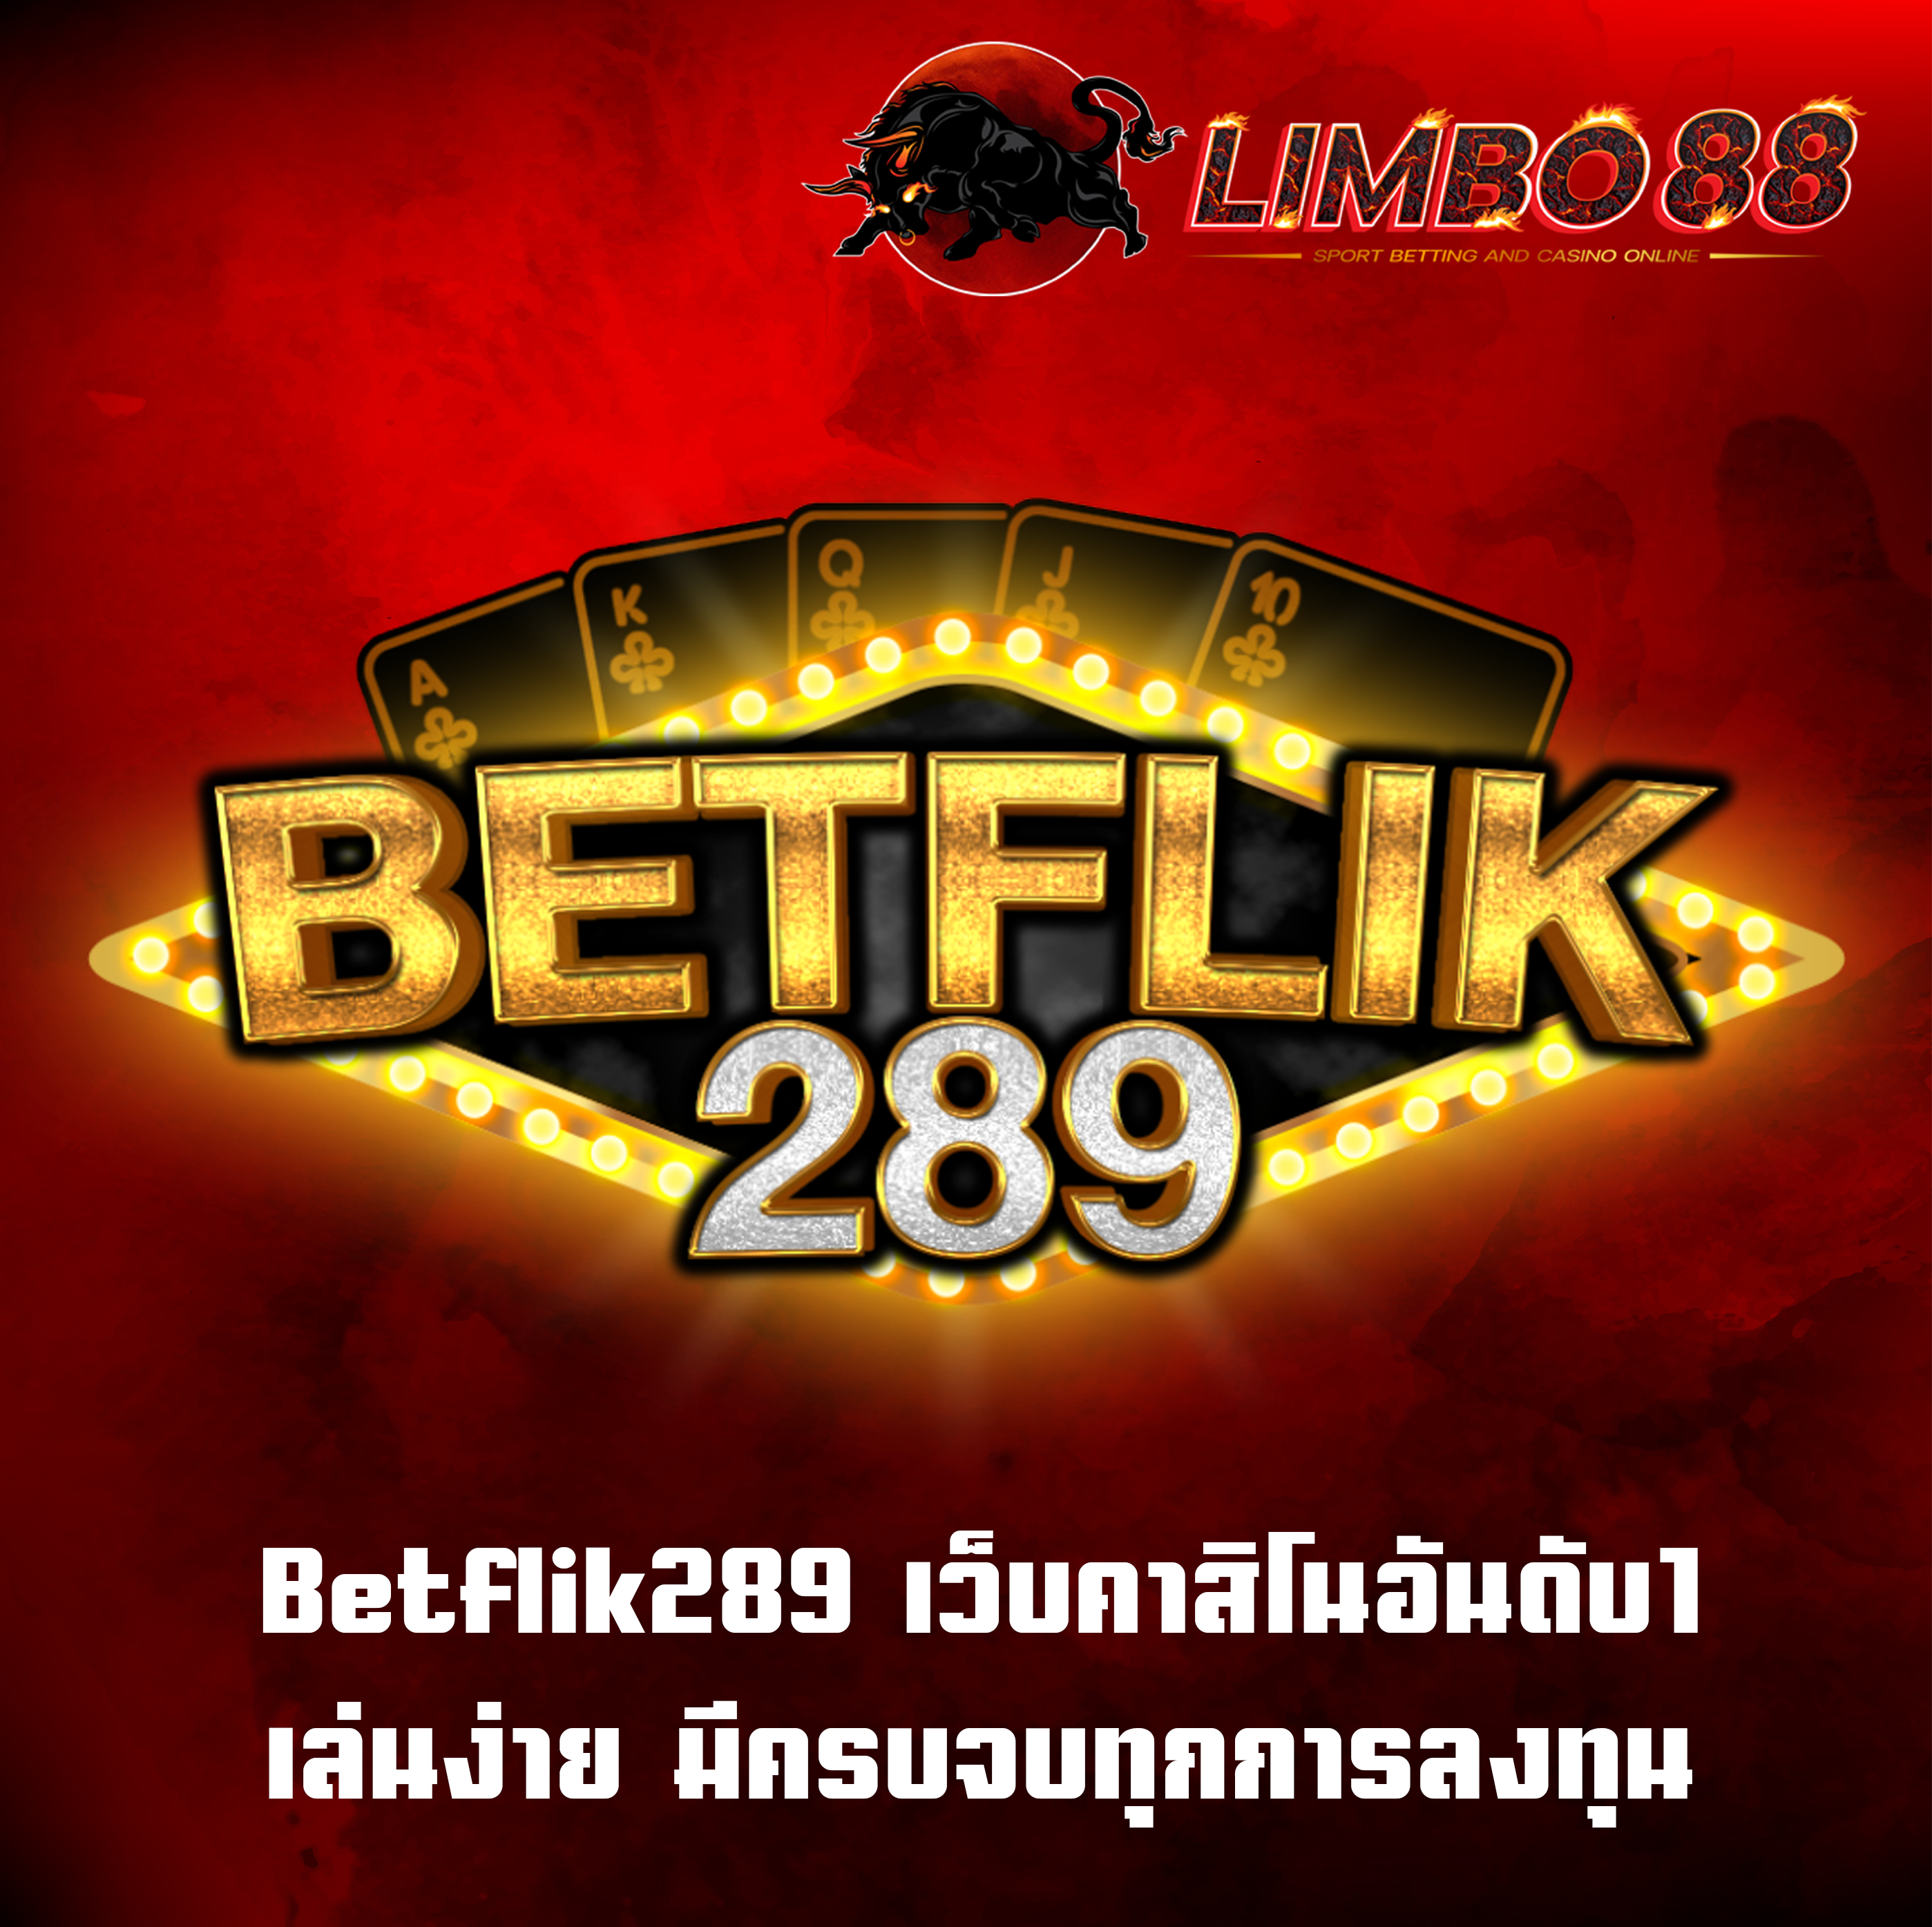 Betflik289 เว็บคาสิโนอันดับ1 เล่นง่าย มีครบจบทุกการลงทุน